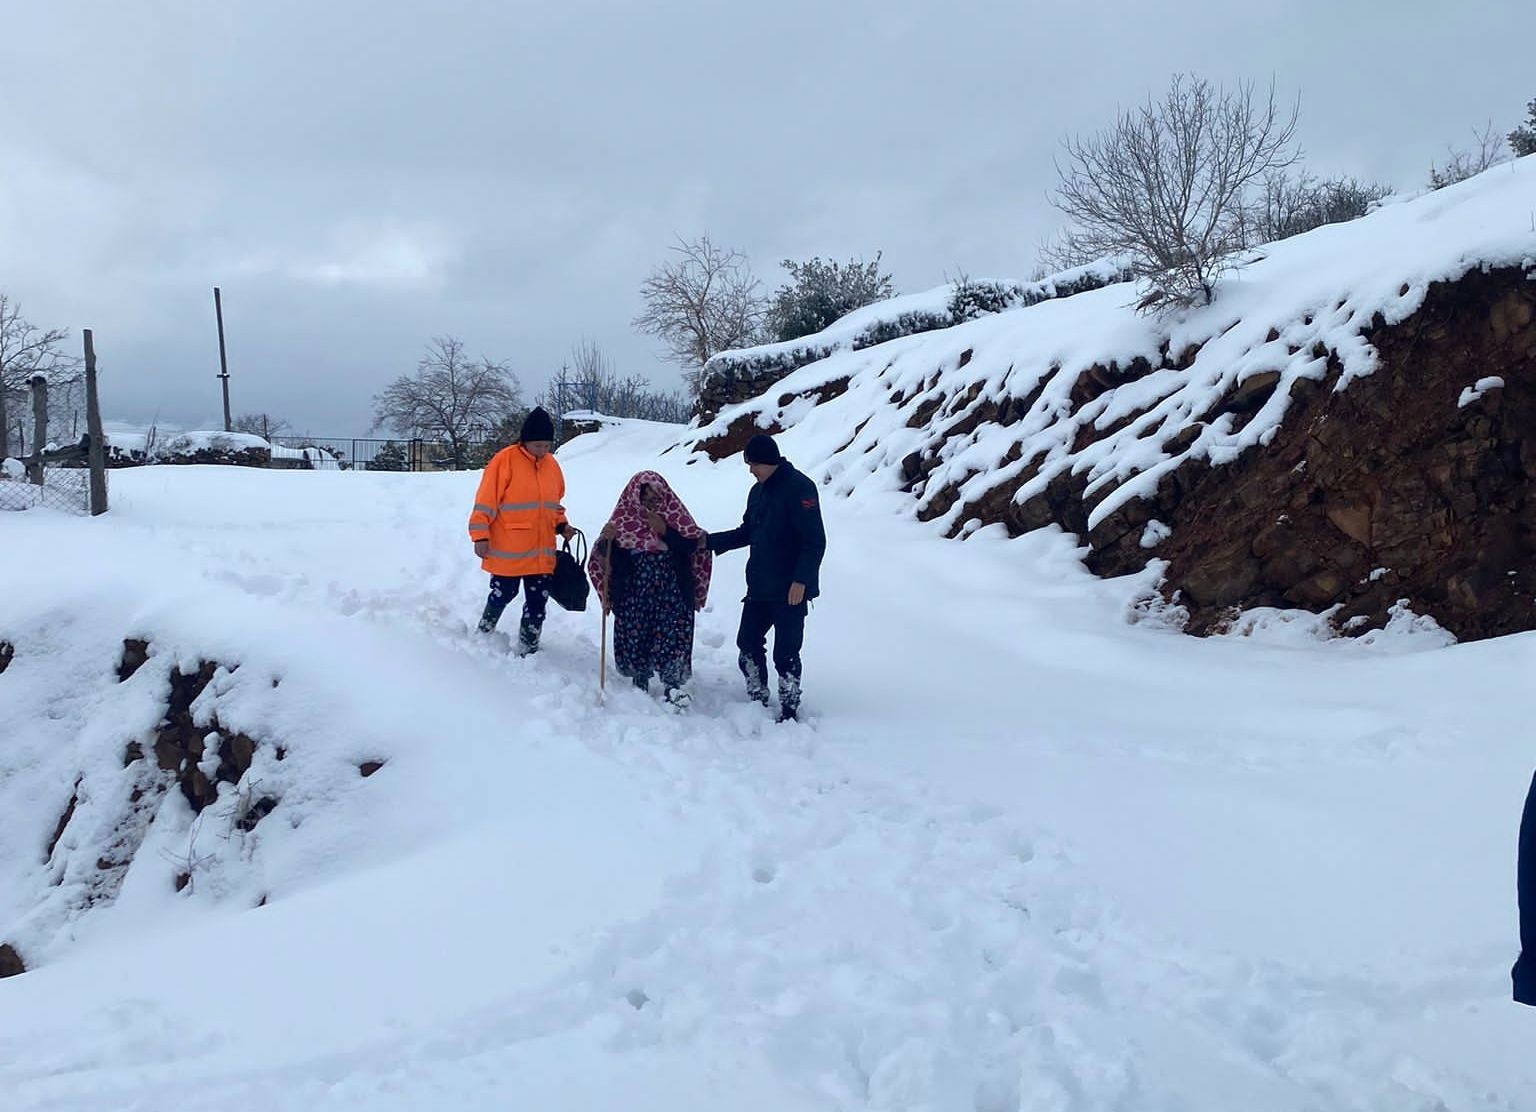 Yol kardan kapandı, hasta kadının imdadına ekipler yetişti #osmaniye